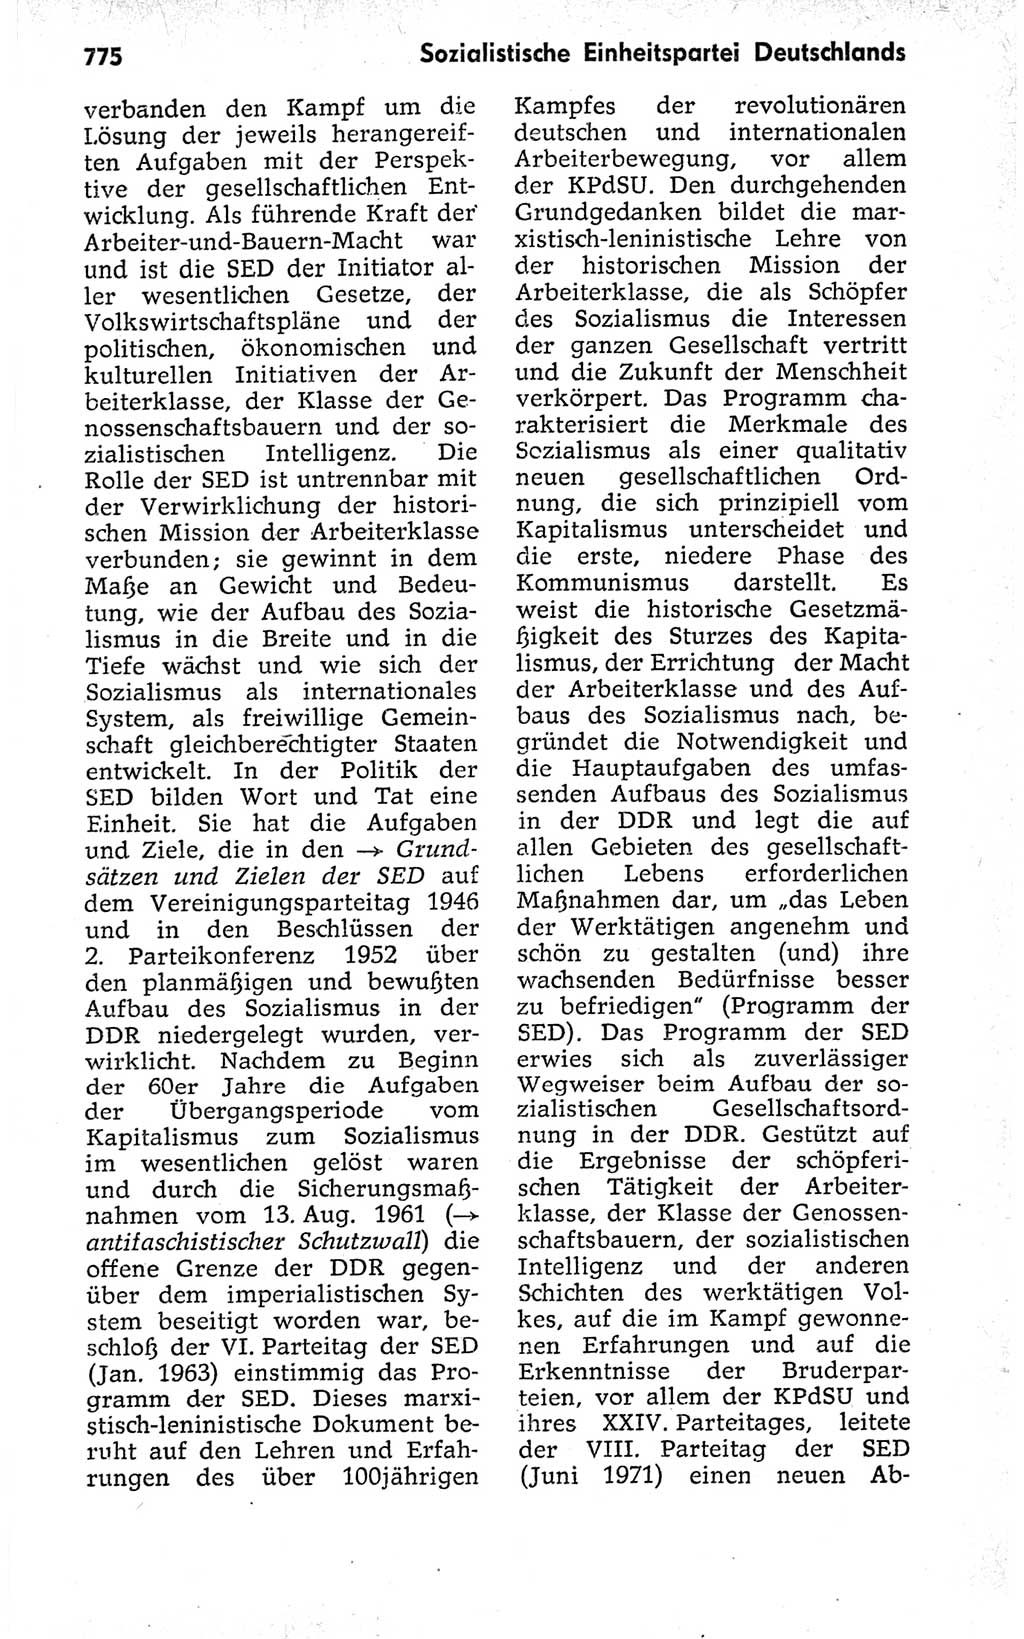 Kleines politisches Wörterbuch [Deutsche Demokratische Republik (DDR)] 1973, Seite 775 (Kl. pol. Wb. DDR 1973, S. 775)